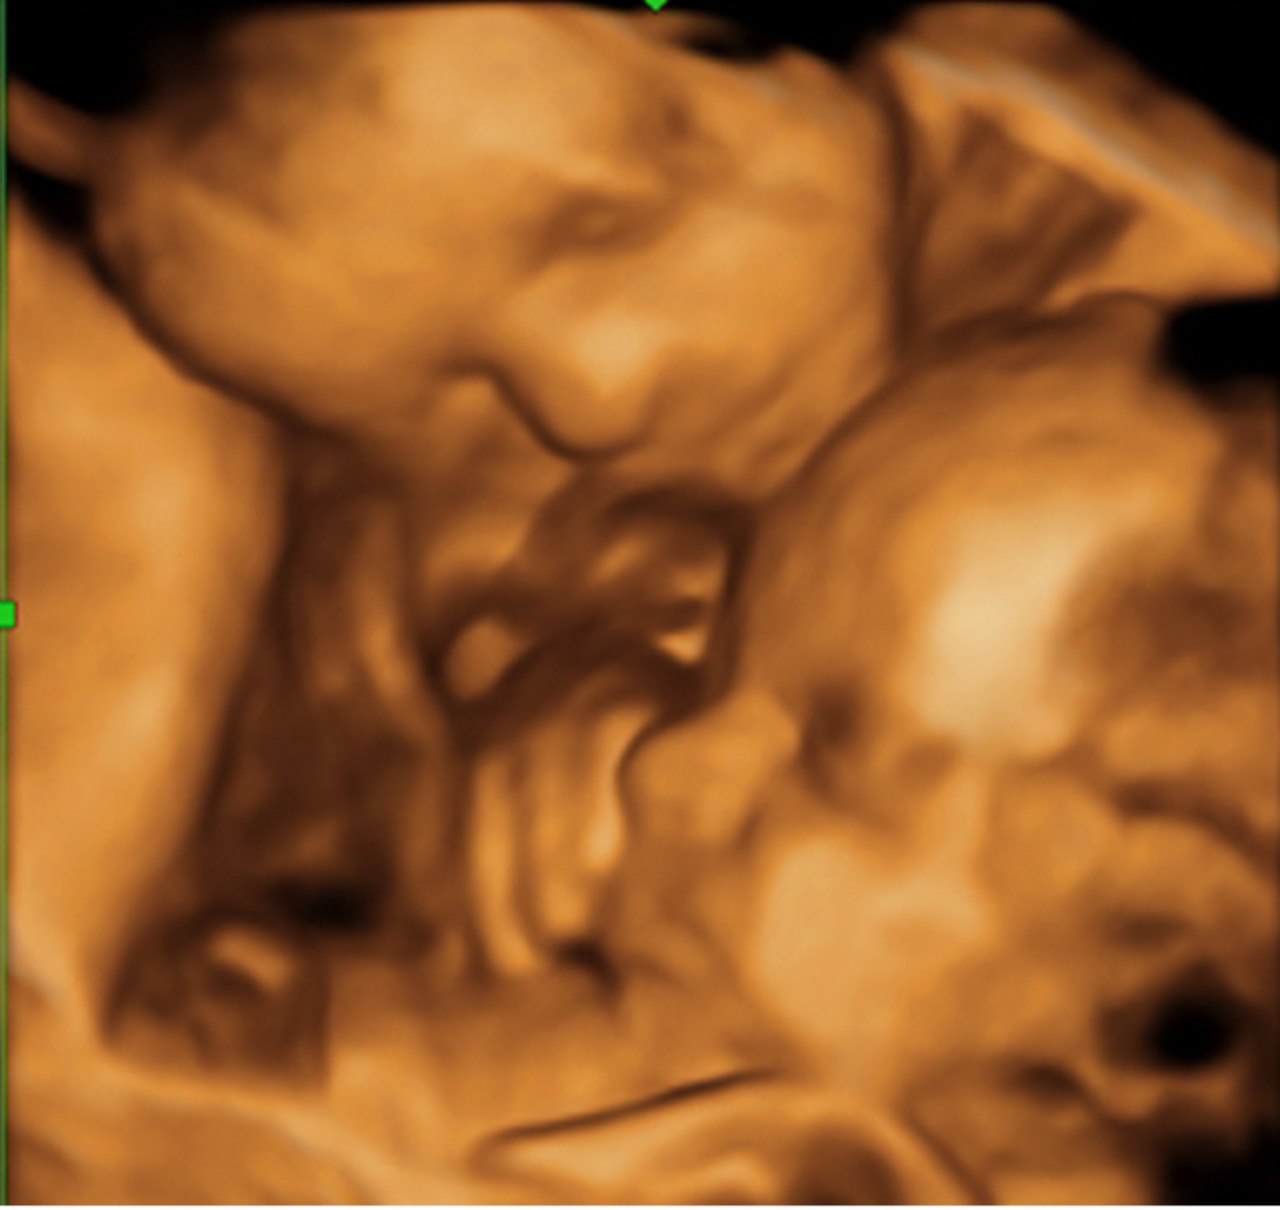 УЗИ многоплодной беременности в 3 триместре - диагностика